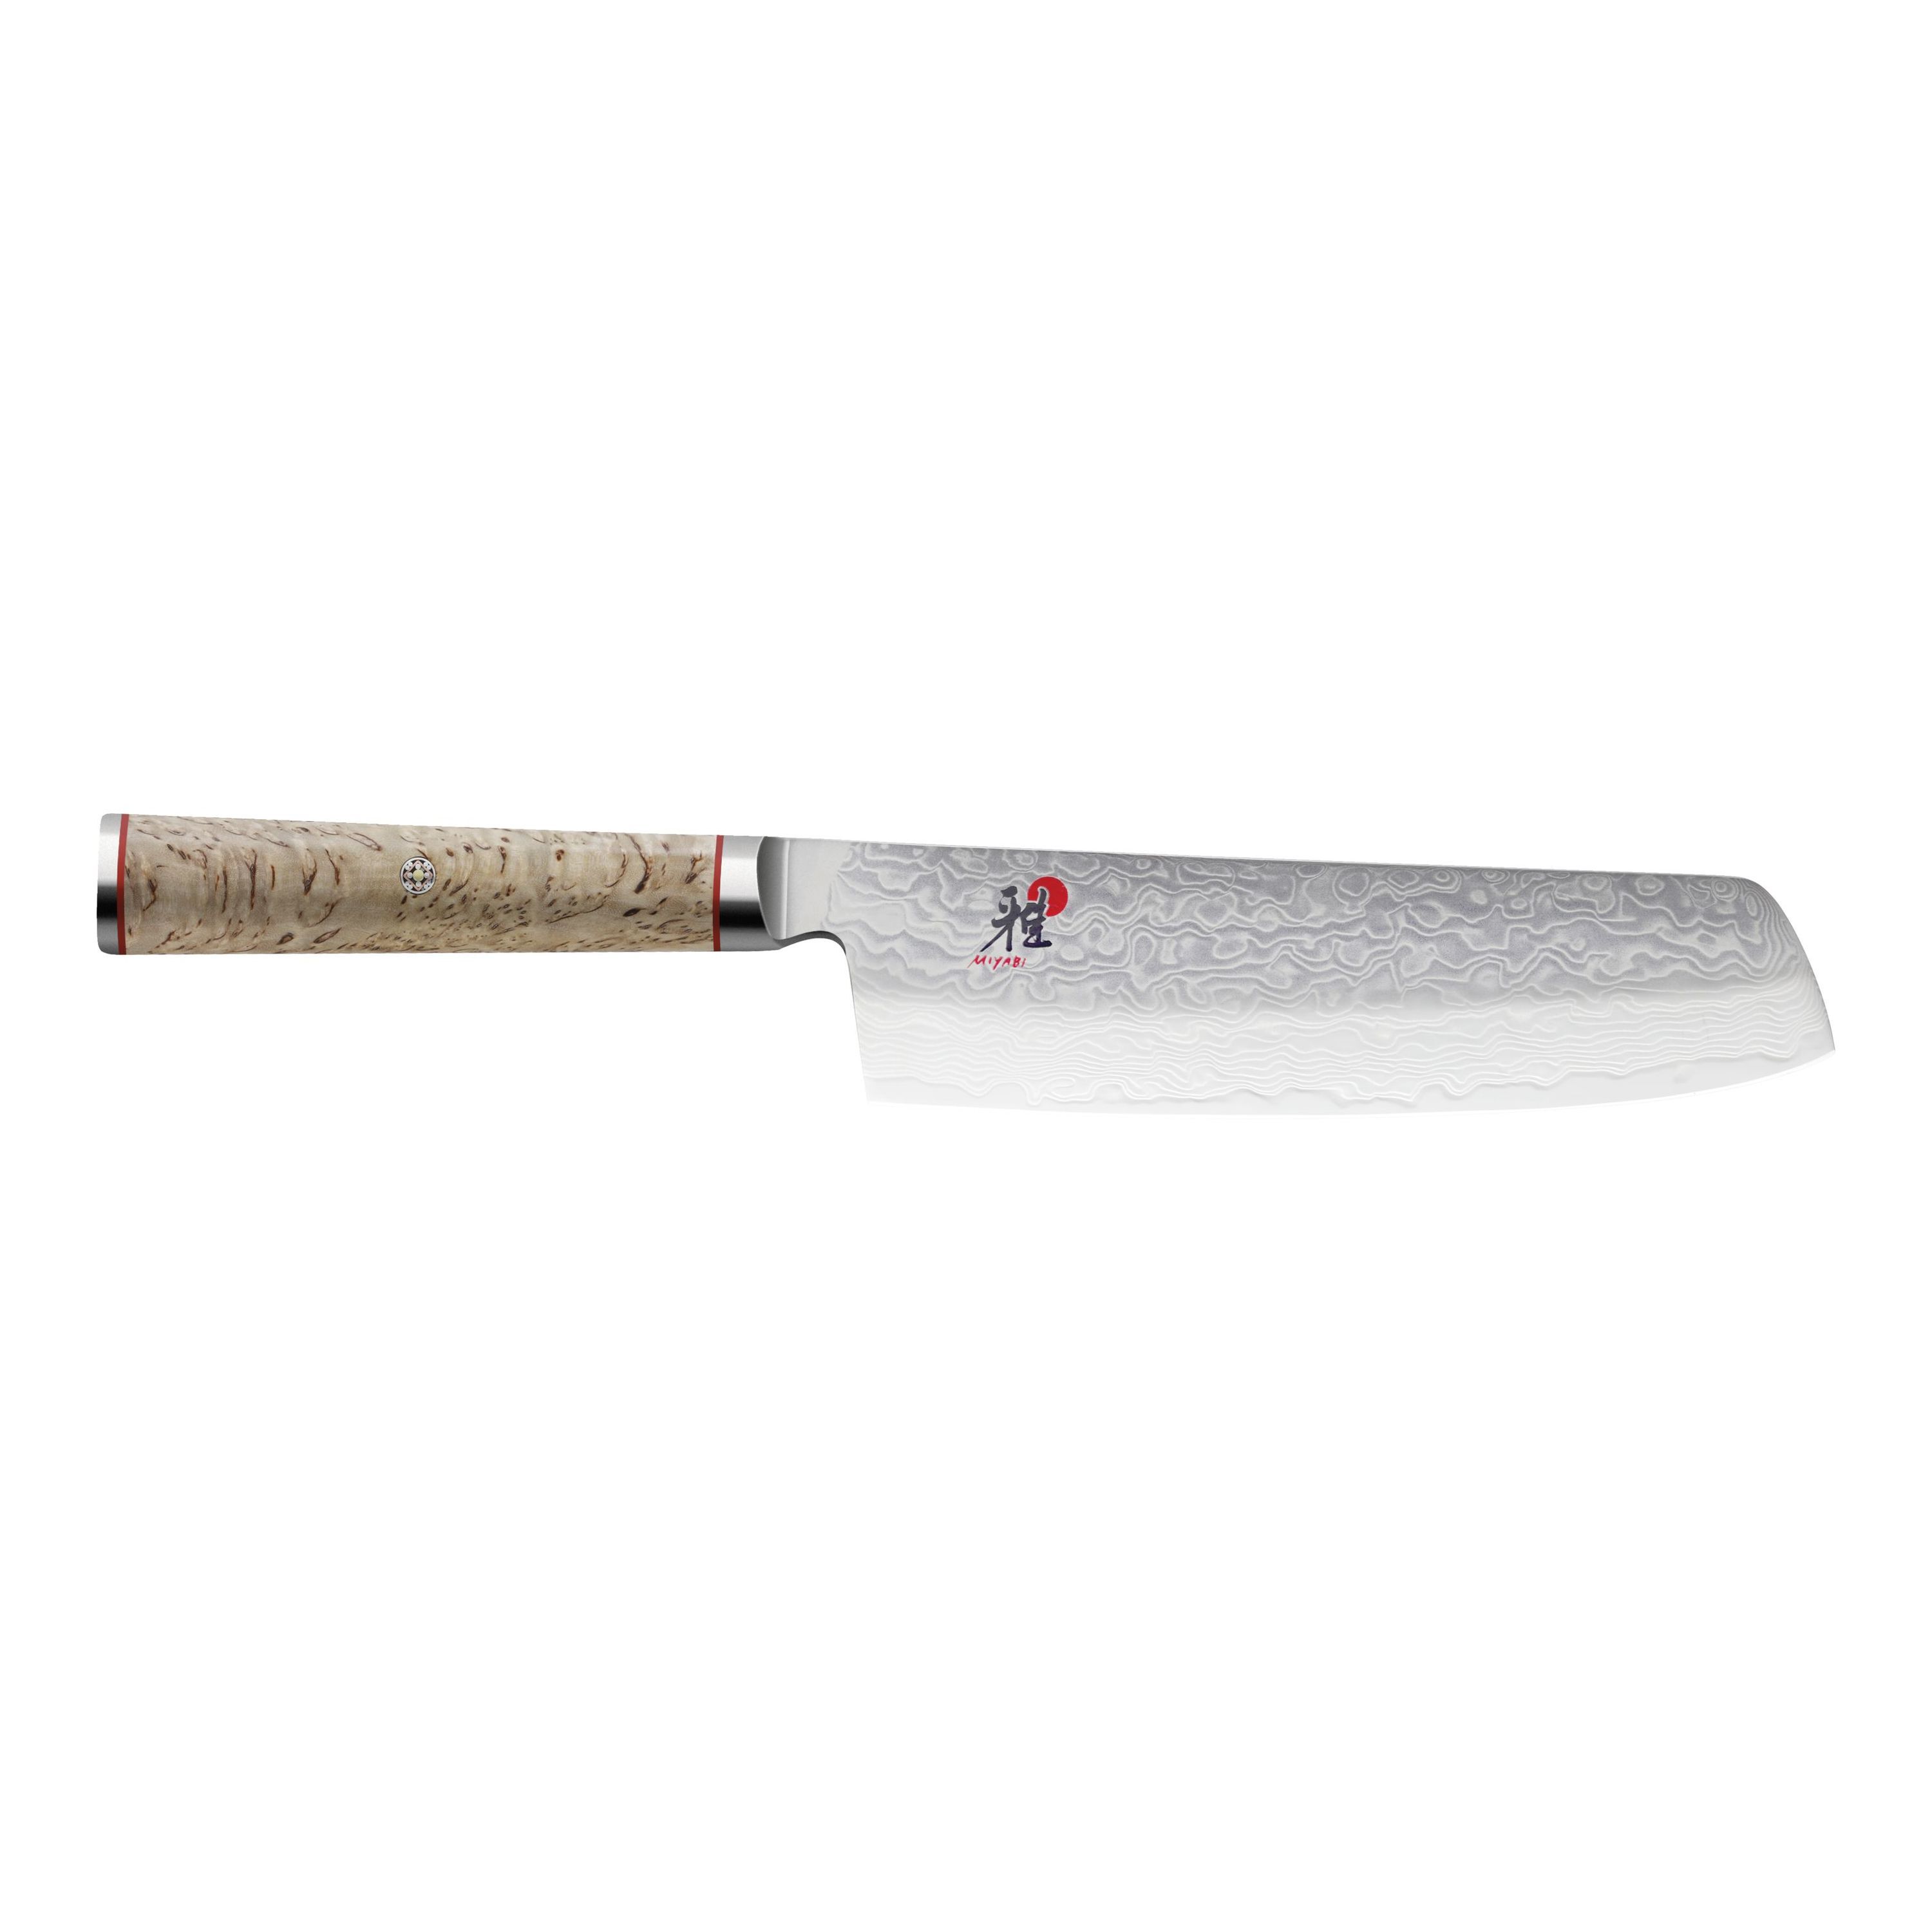 MIYABI Birchwood SG2 5000MCD knives | ZWILLING.COM